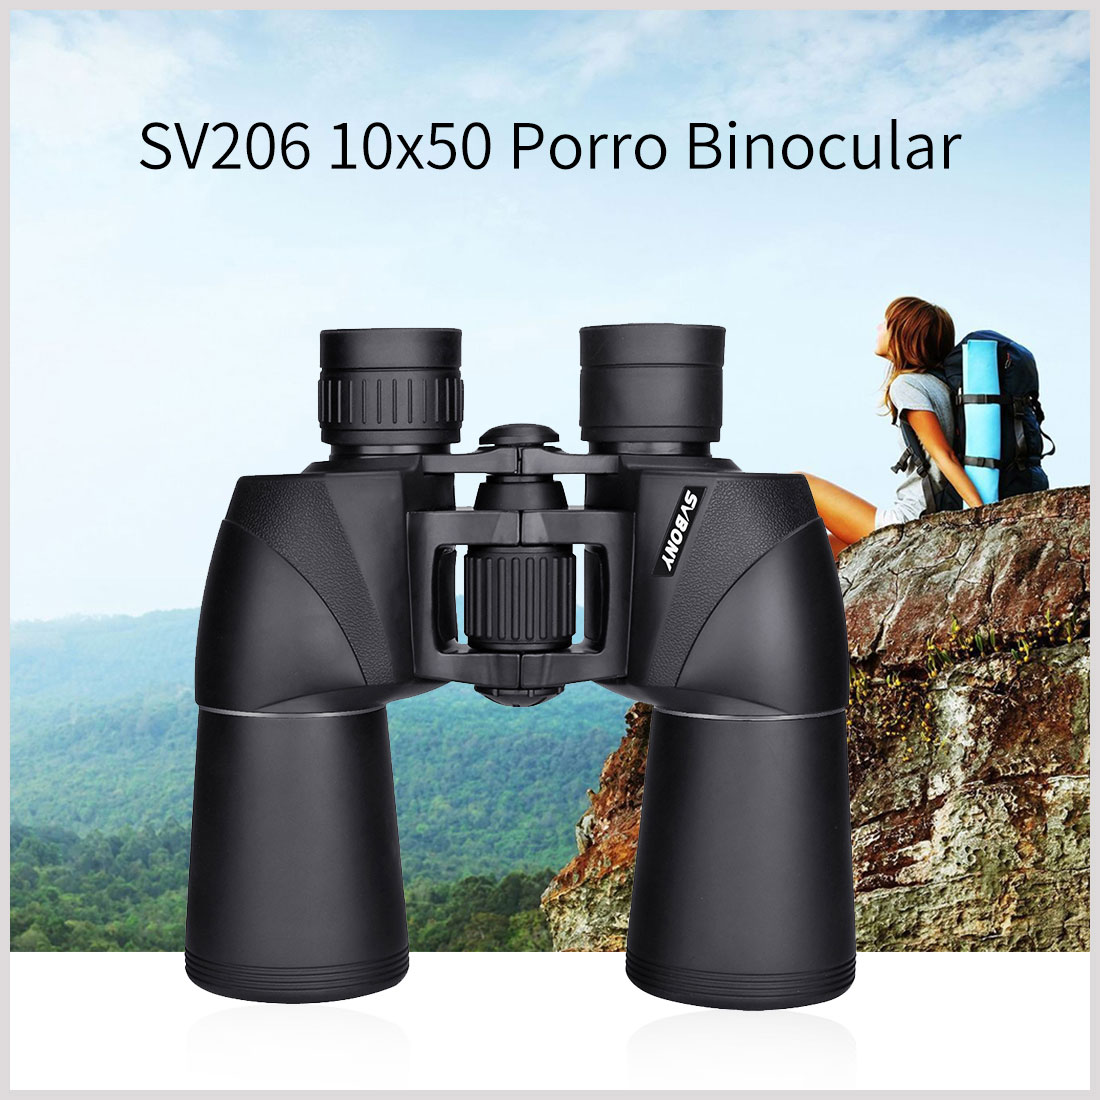 SV206 porro binocular.jpg